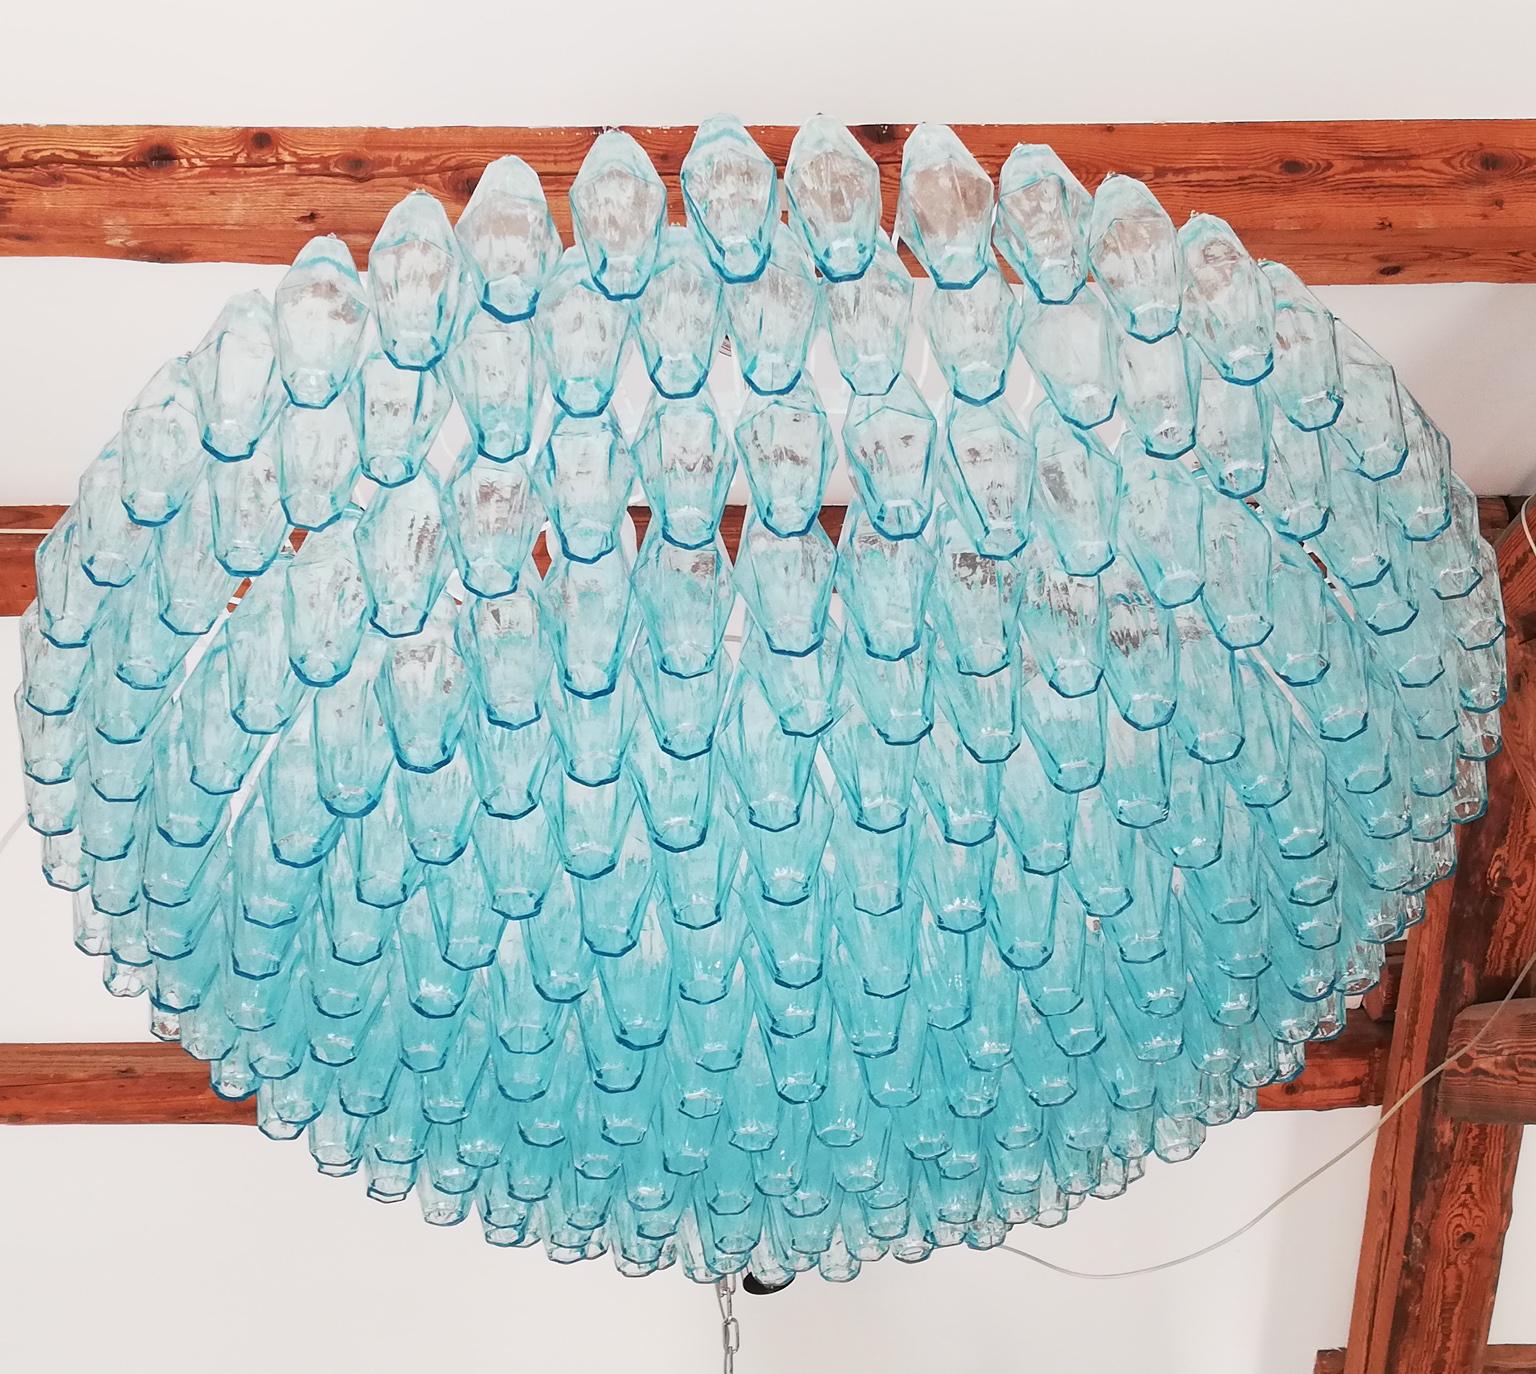 Murano mundgeblasenem Glas Poliedri Kronleuchter Farbe hellblau Elemente. 
Dieser fantastische Kronleuchter besteht aus insgesamt 282 Elementen, die Poliedri genannt werden. 

Dieser Klassiker wurde in den 1960er Jahren entwickelt und dann von